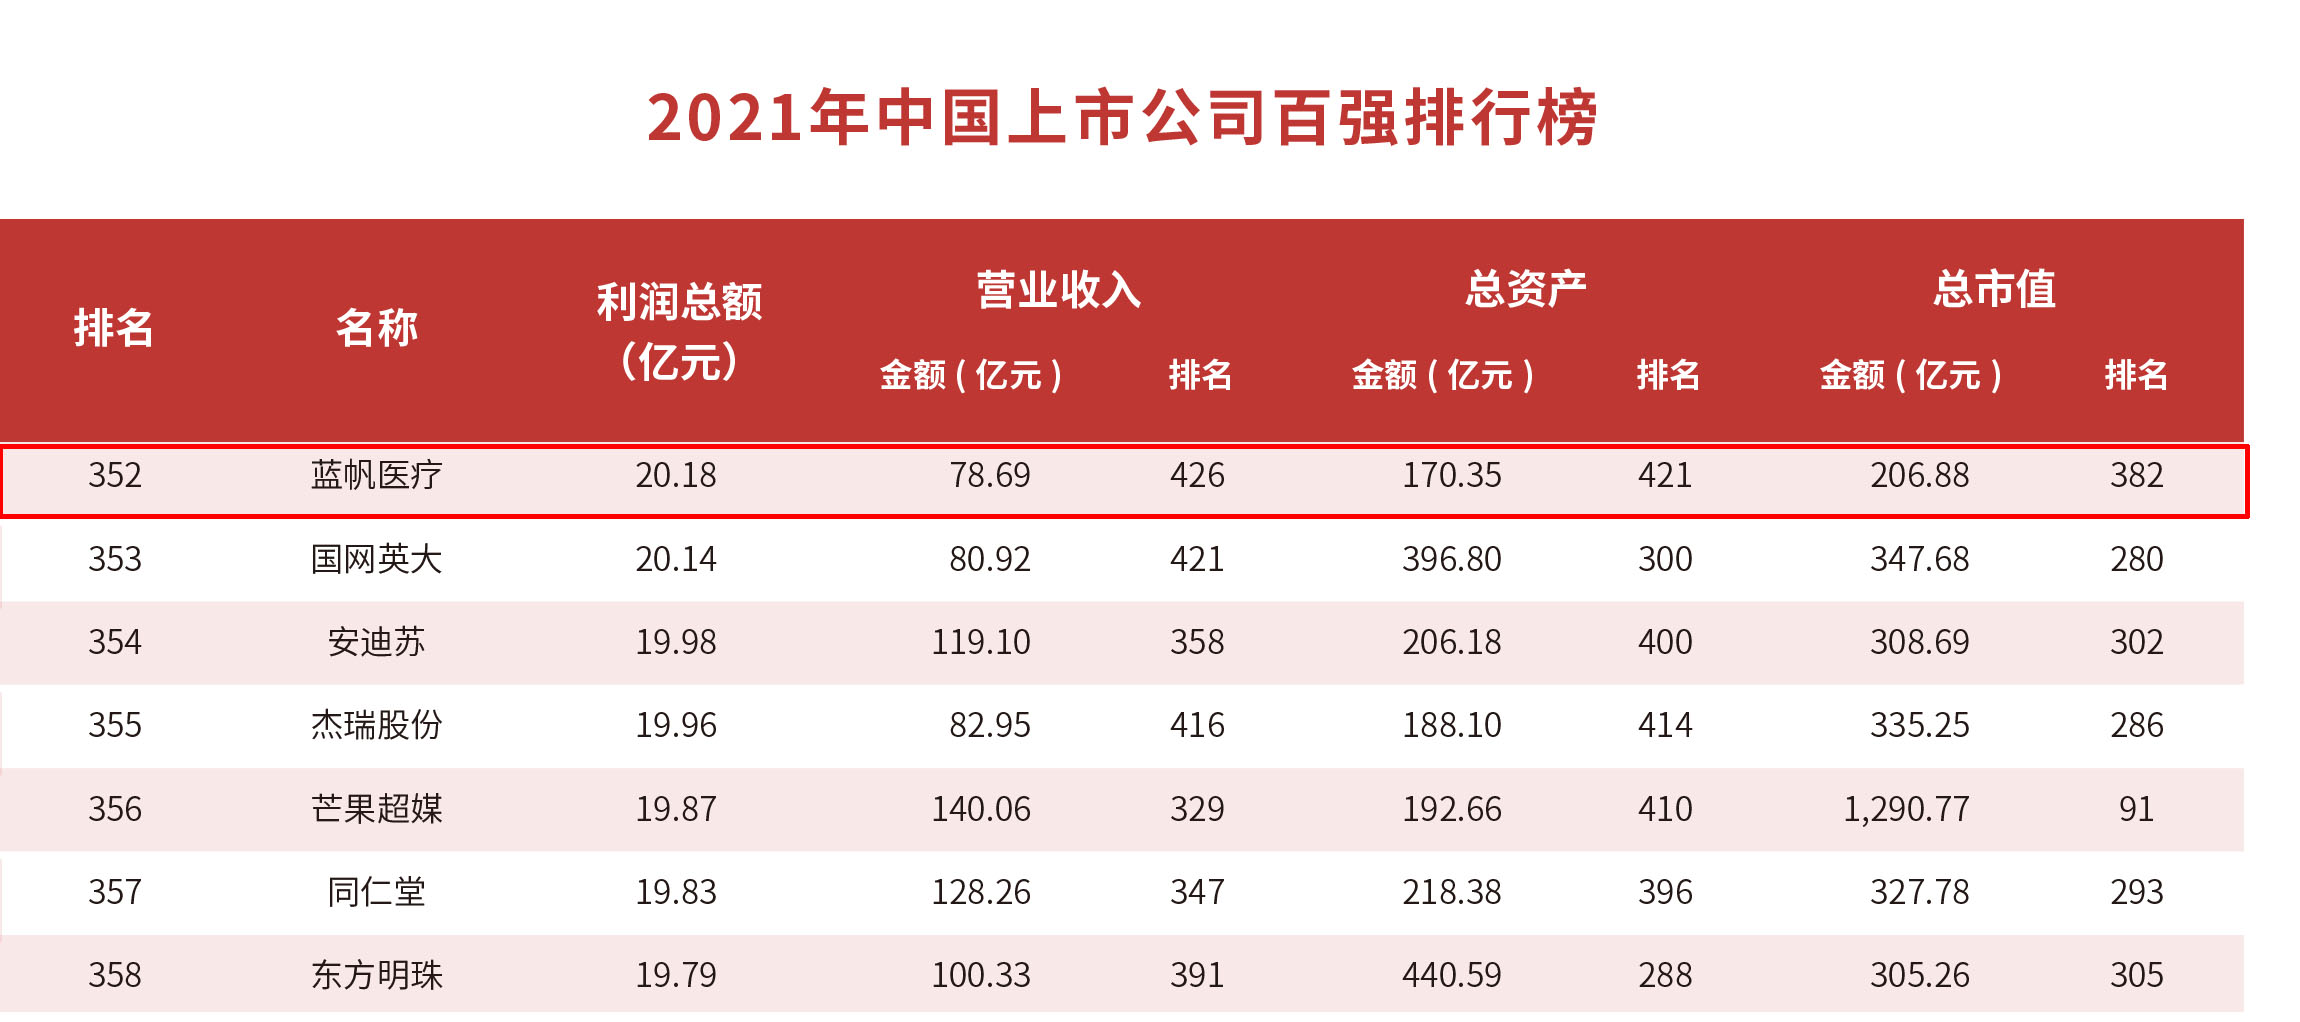 附件3：2021 年中国上市公司百强排行榜-12.jpg